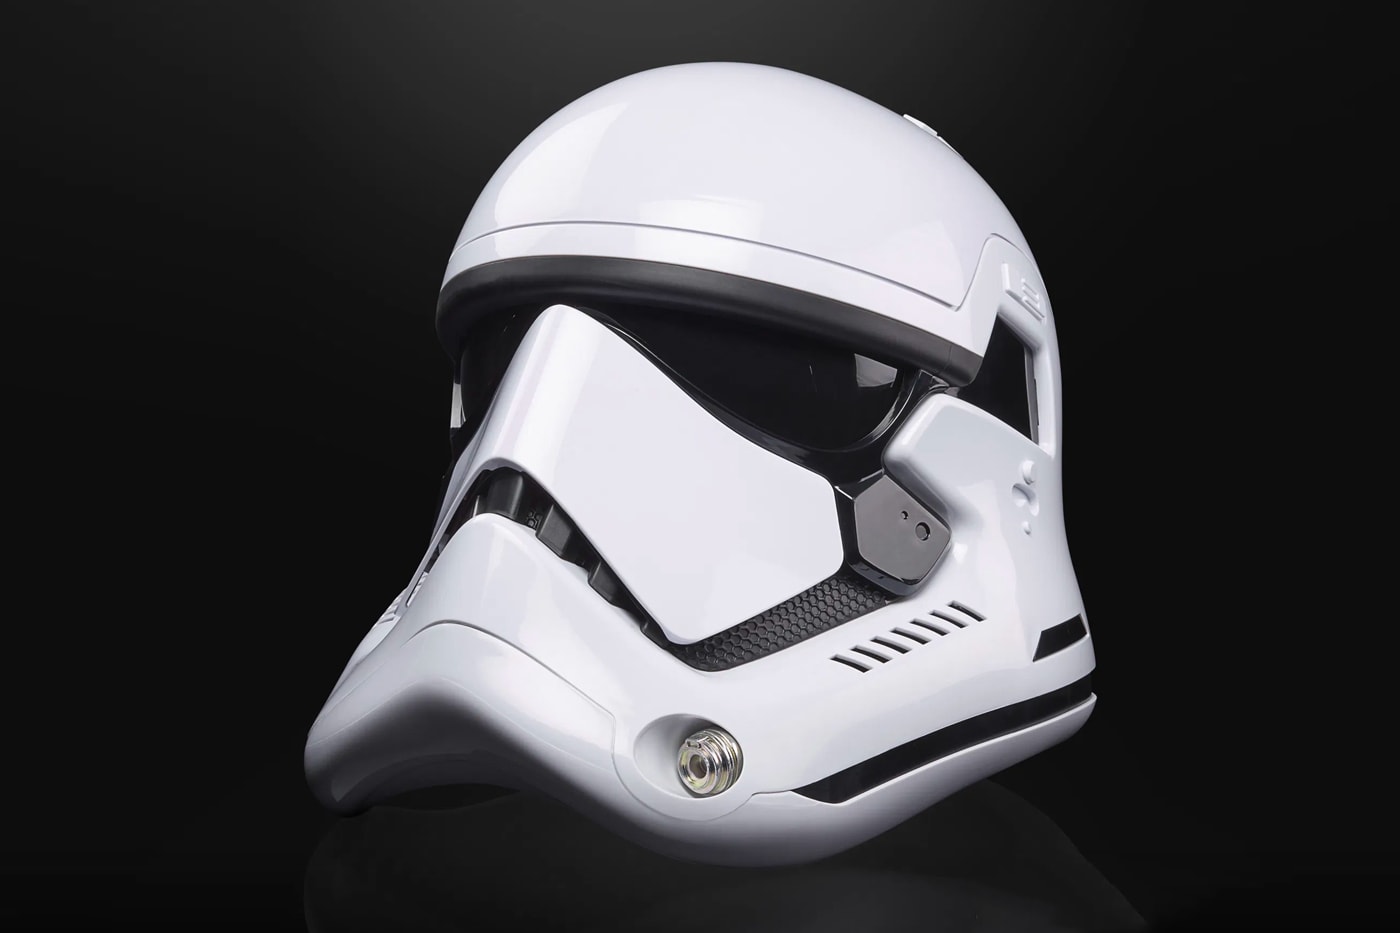 『スター・ウォーズ』のストーム・トルーパーのヘルメットを再現したプロダクトが登場 Hasbro Star Wars The Black Series Stormtrooper Helmet toys pre order release info lucasfilms hasbro pulse 